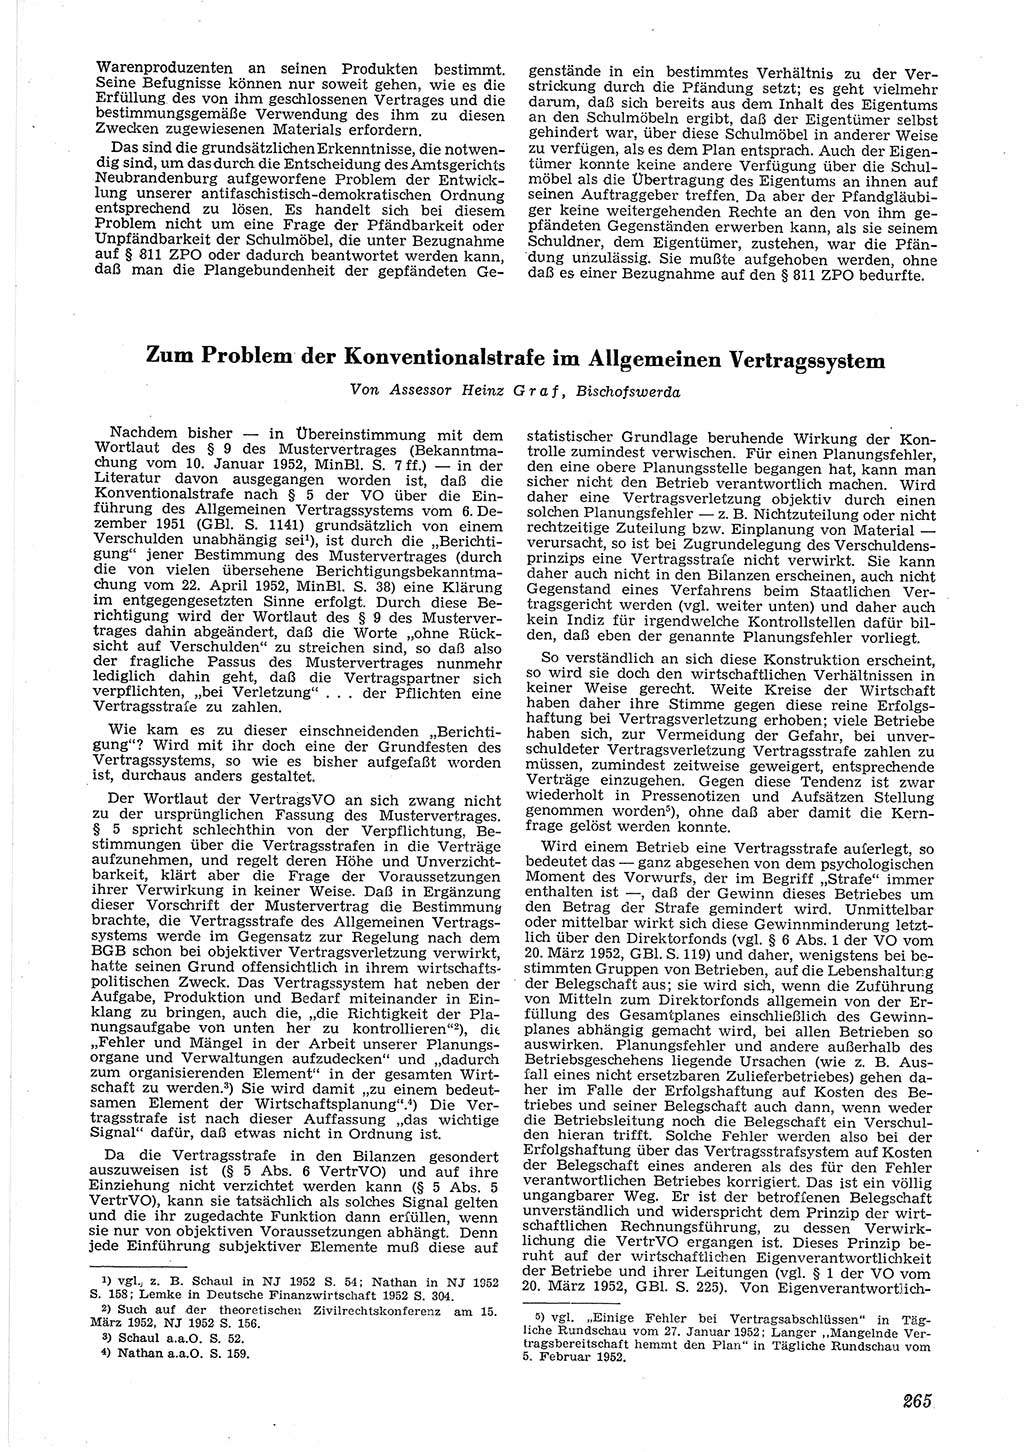 Neue Justiz (NJ), Zeitschrift für Recht und Rechtswissenschaft [Deutsche Demokratische Republik (DDR)], 6. Jahrgang 1952, Seite 265 (NJ DDR 1952, S. 265)